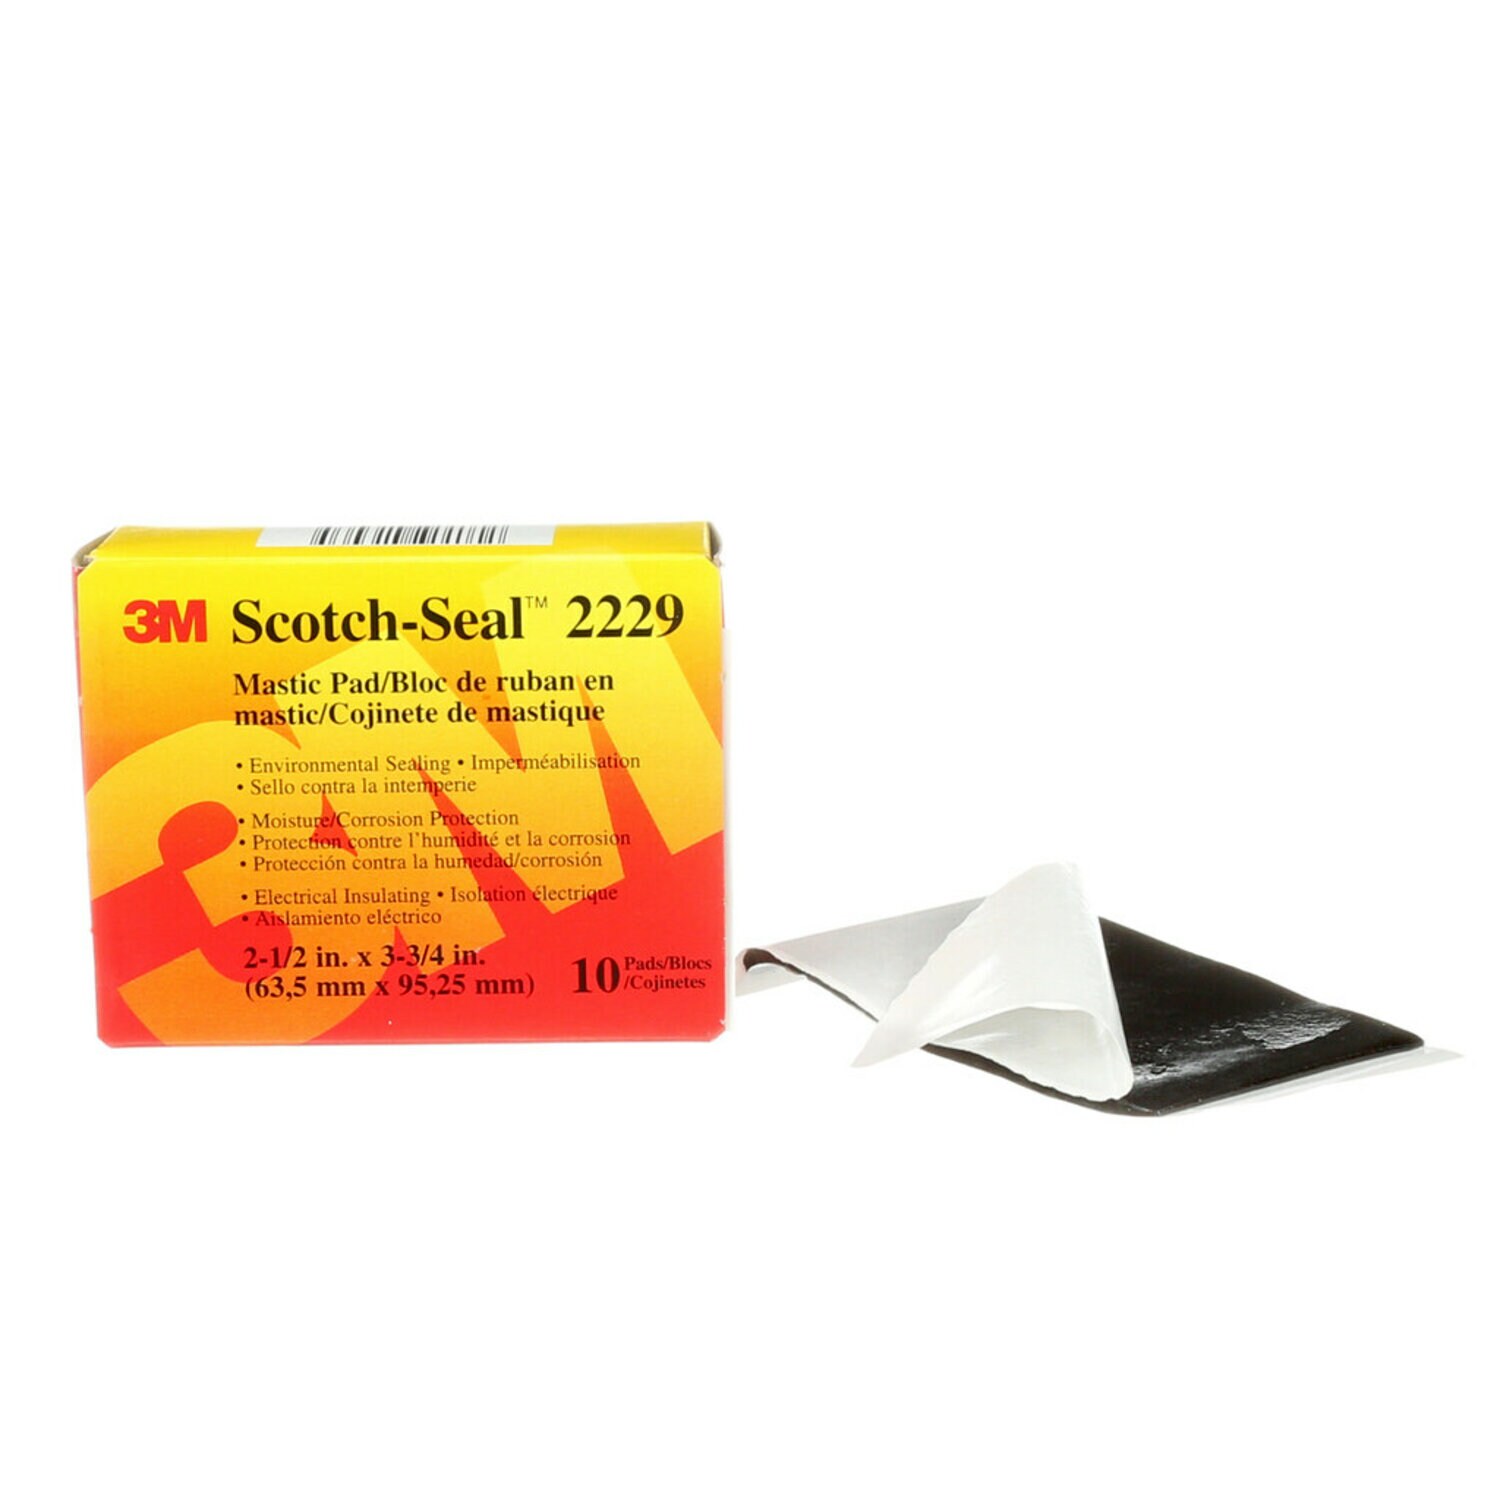 7000132544 - 3M Scotch-Seal Mastic Tape Compound 2229, 2-1/2 in x 3-3/4 in, Black,
10 pads/carton, 40 pads/Case